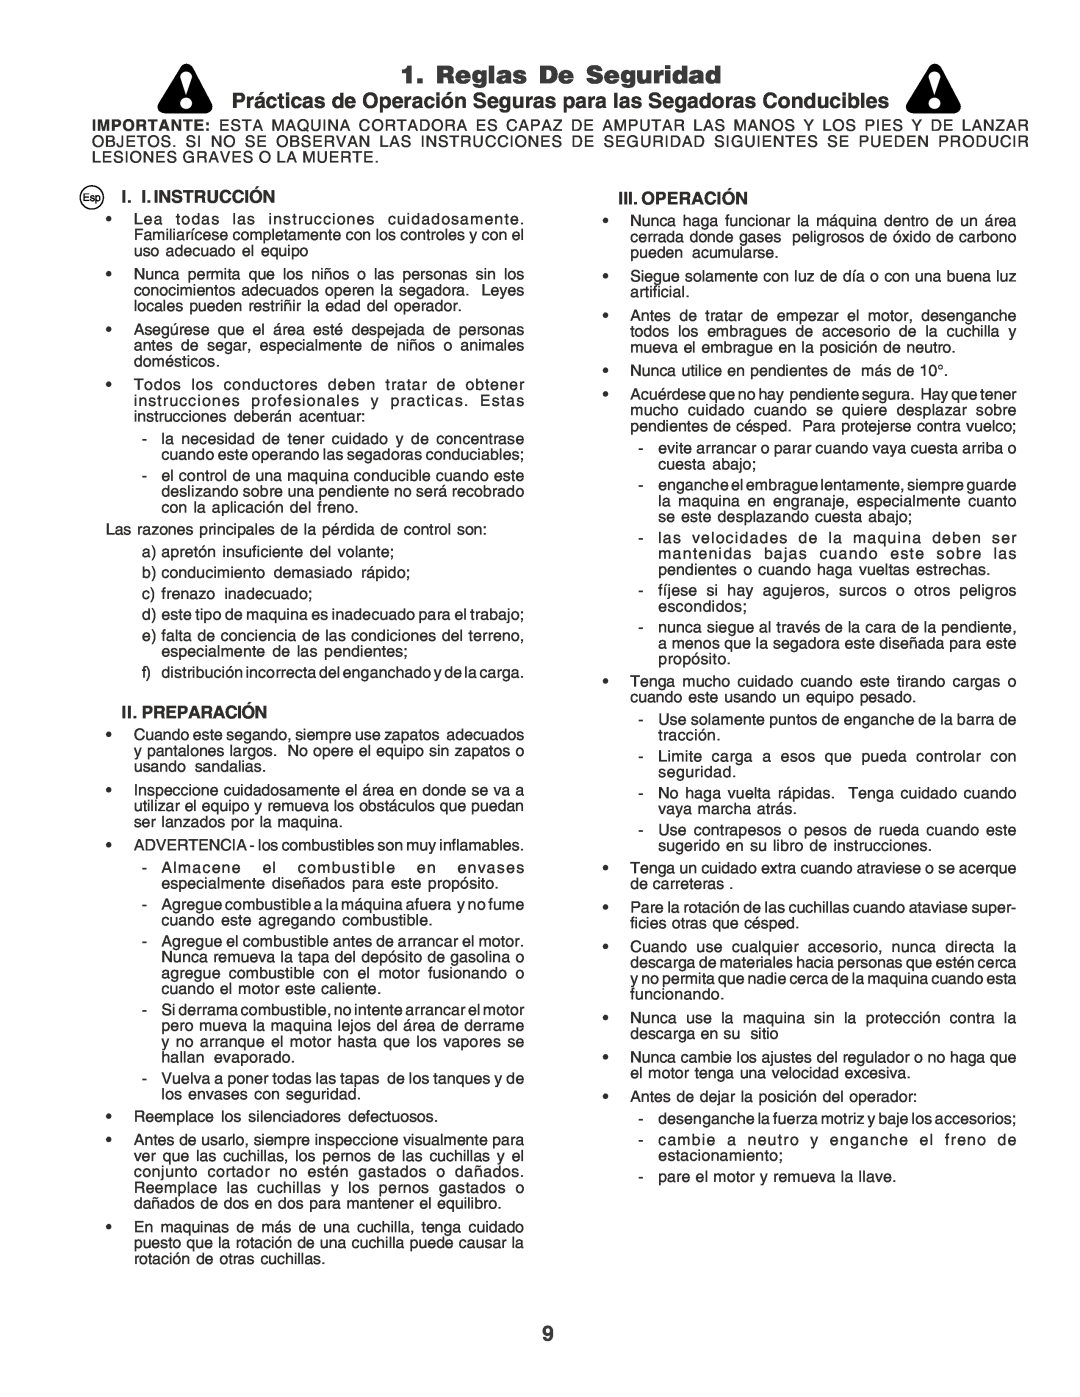 Husqvarna YT155 Reglas De Seguridad, Prácticas de Operación Seguras para las Segadoras Conducibles, Esp I. I. INSTRUCCIÓN 